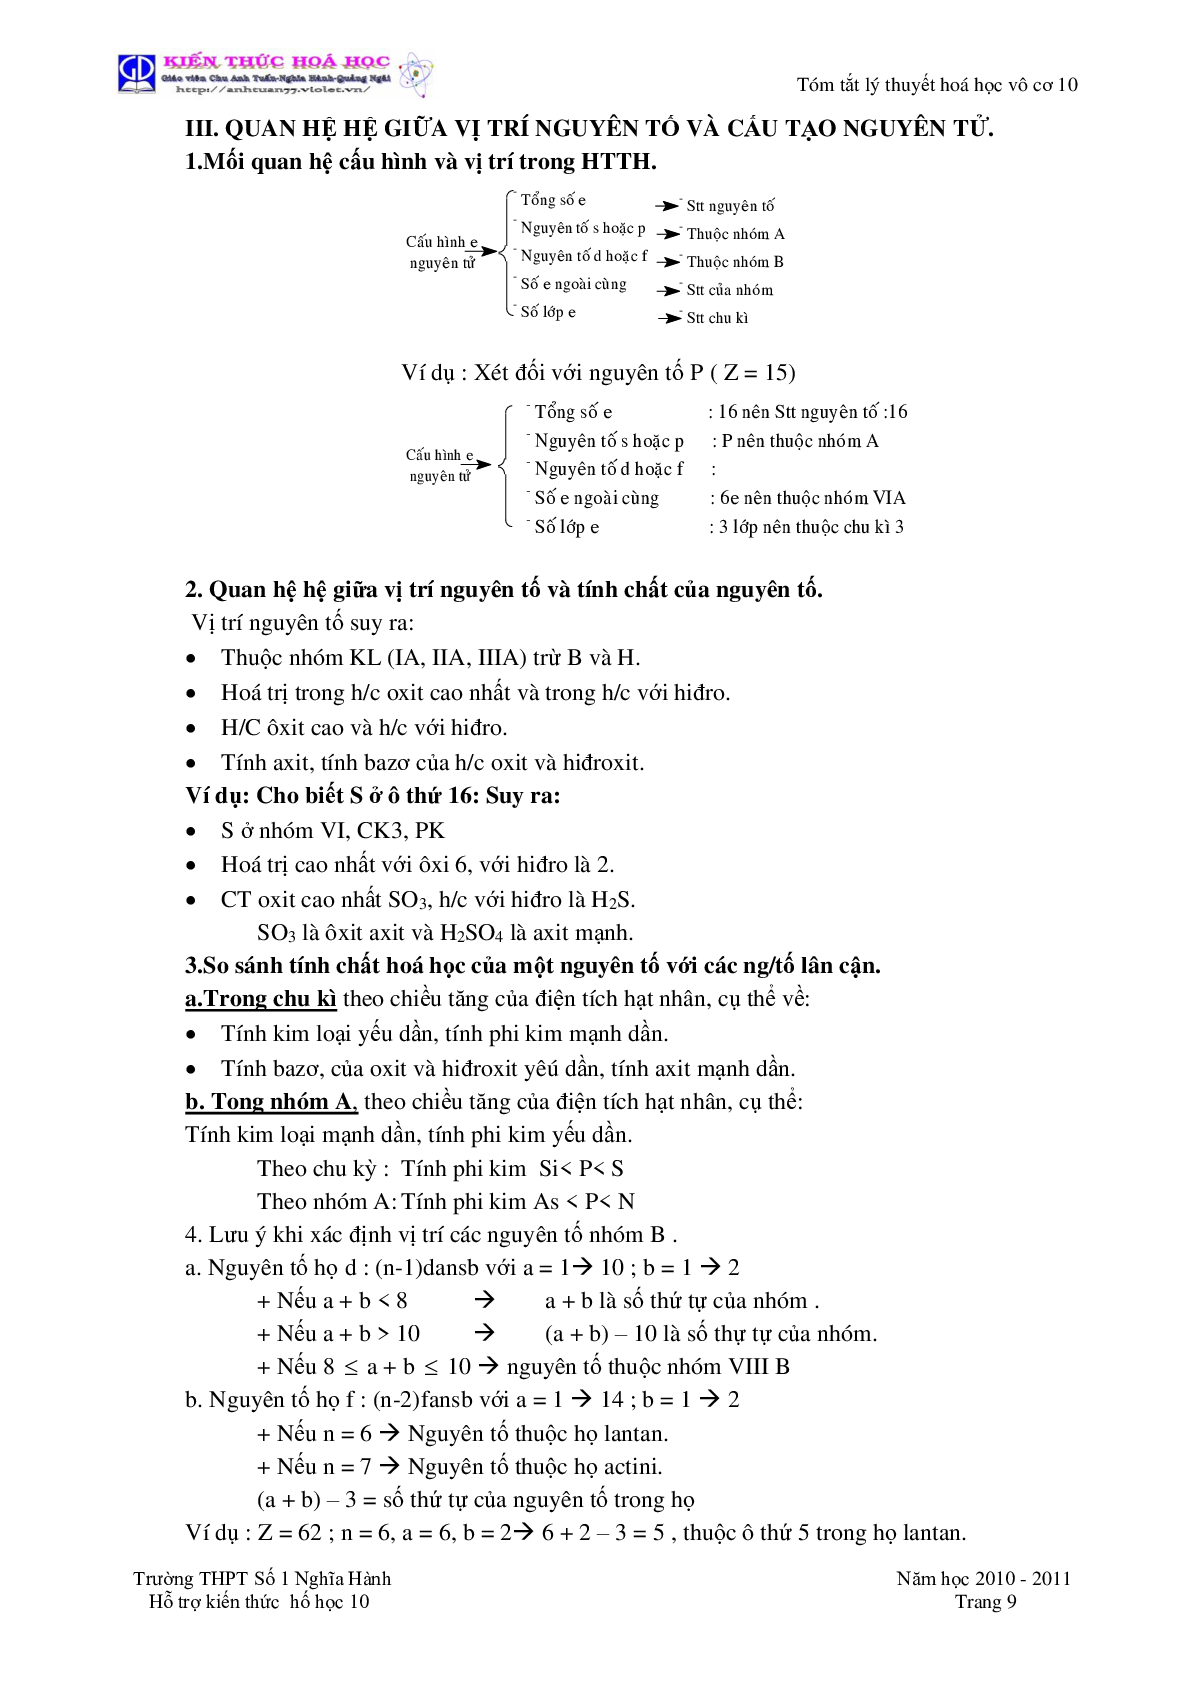 Tóm tắt lý thuyết môn Hóa Học lớp 10 (trang 9)